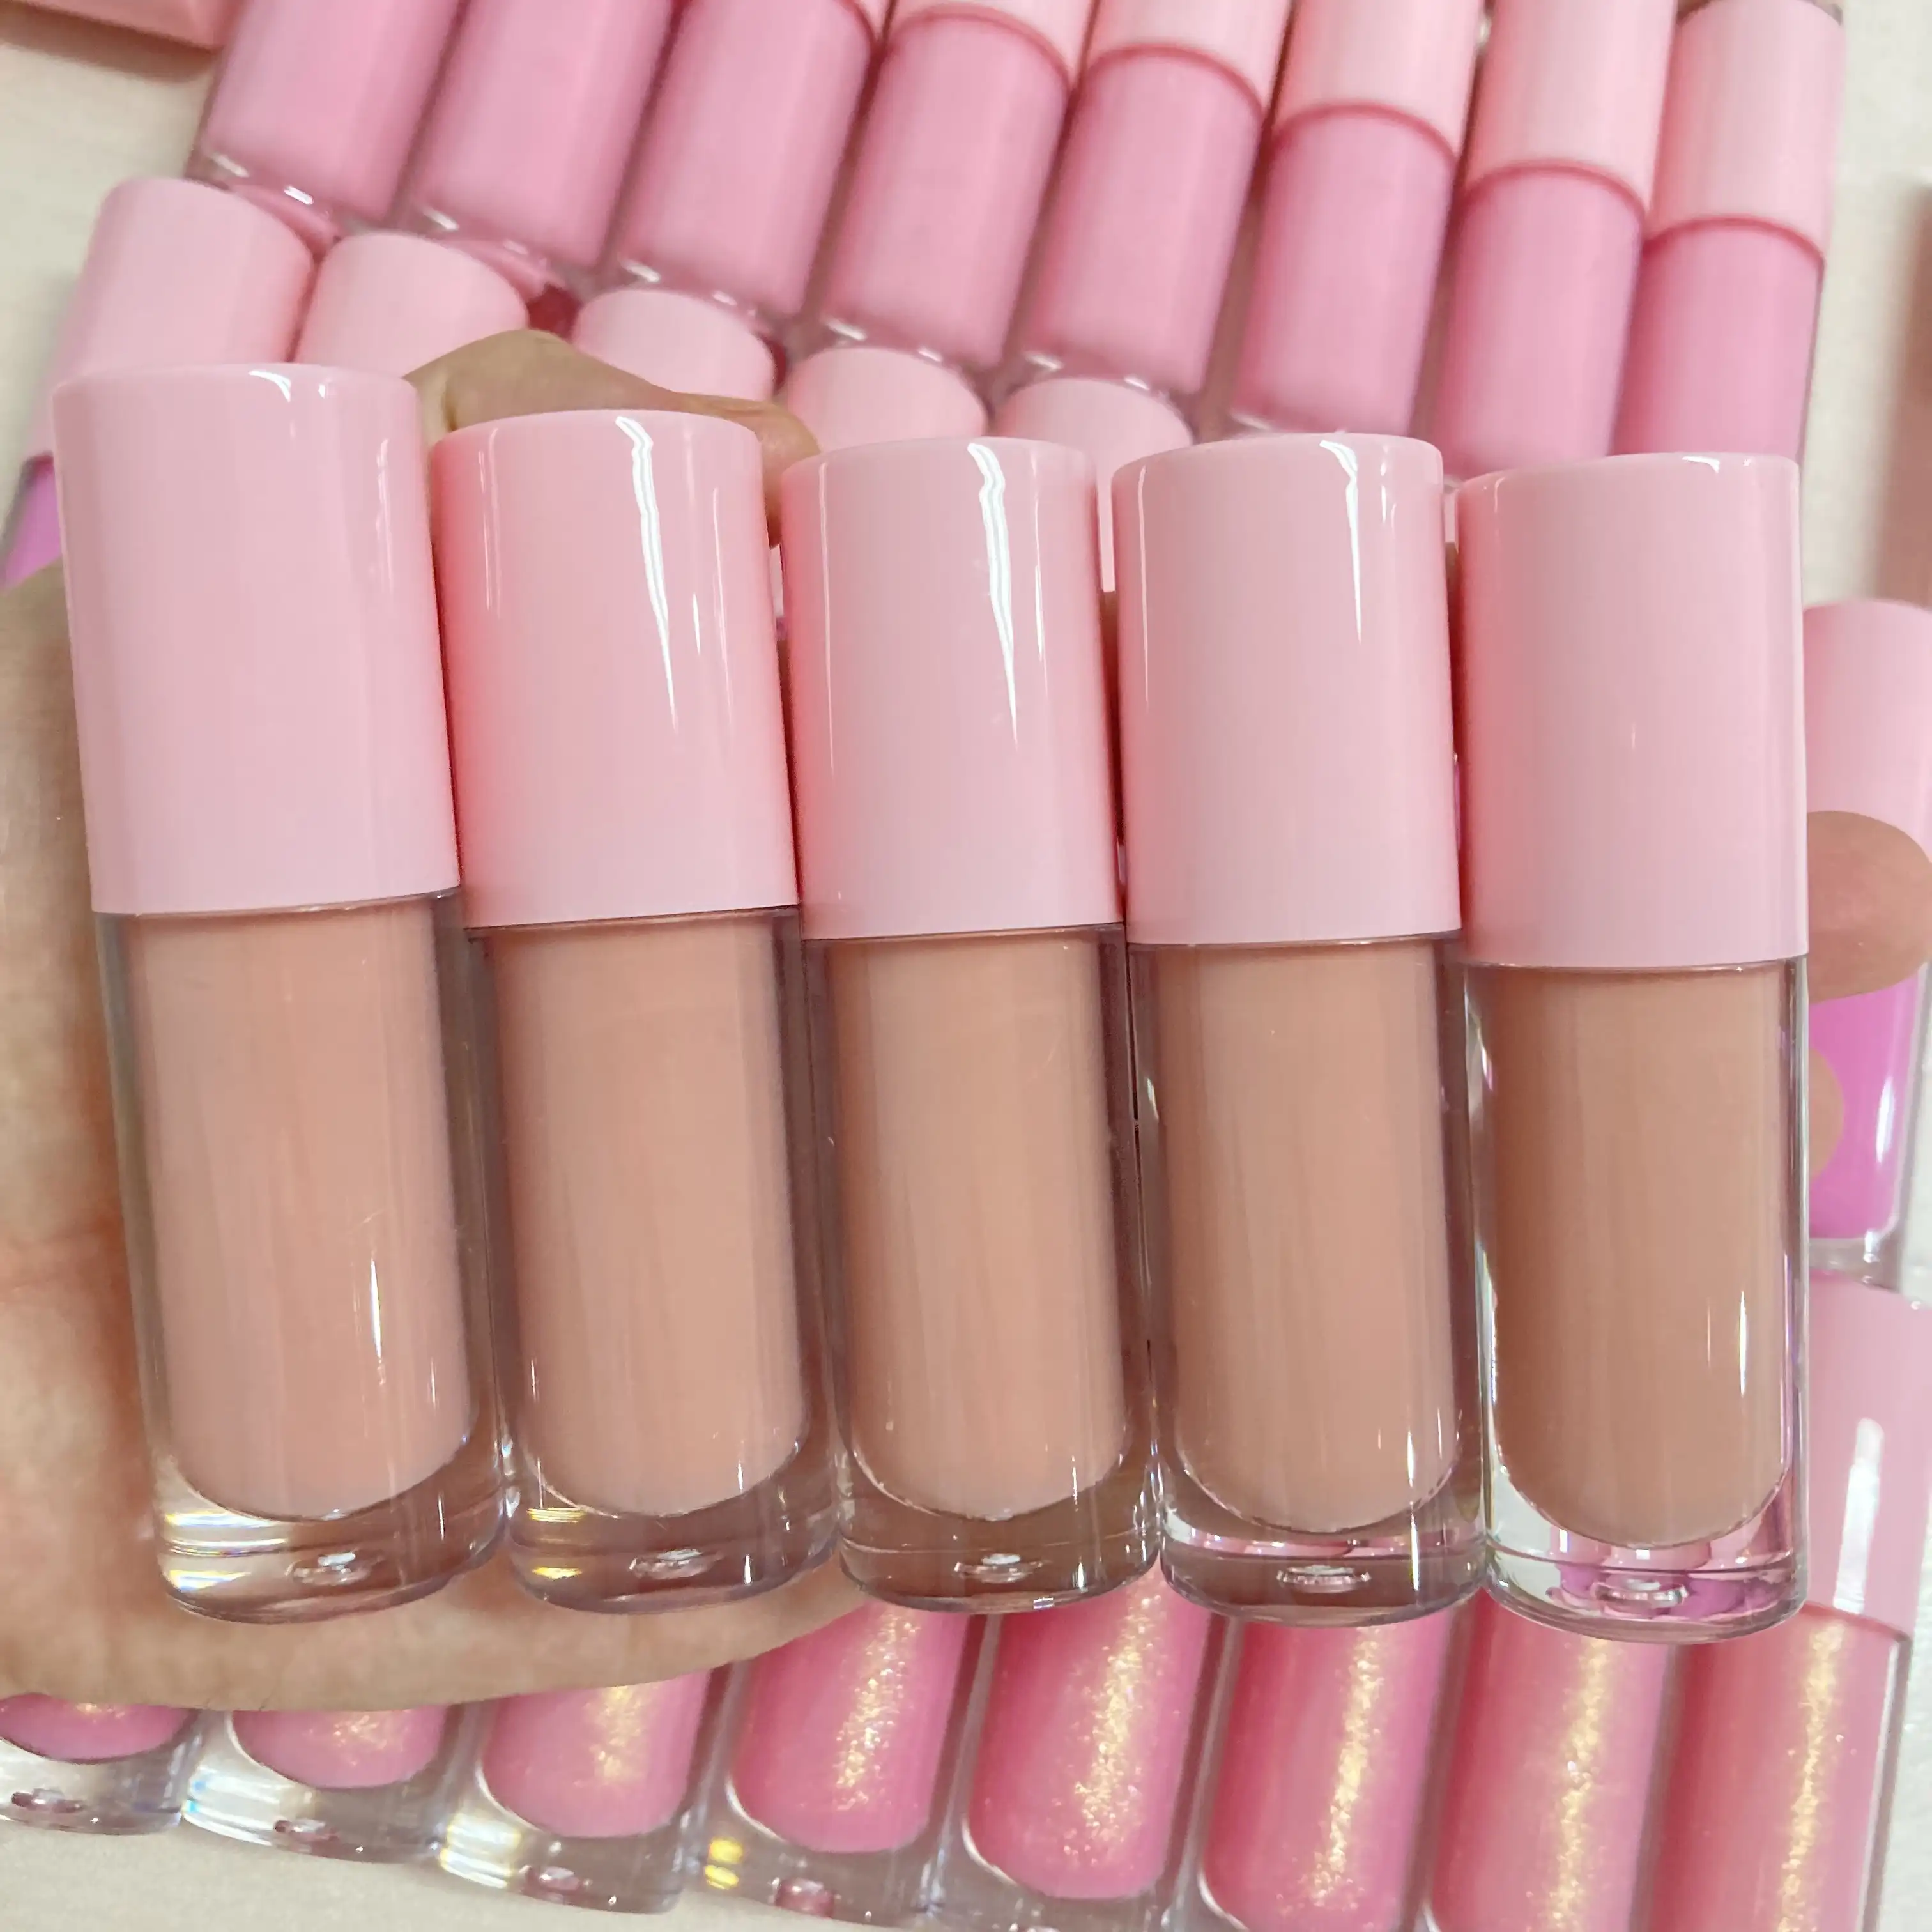 립글로스 공급 업체 도매 40 컬러 매트 립글로스 브랜드 매트 액체 립스틱 립글로스 개인 라벨